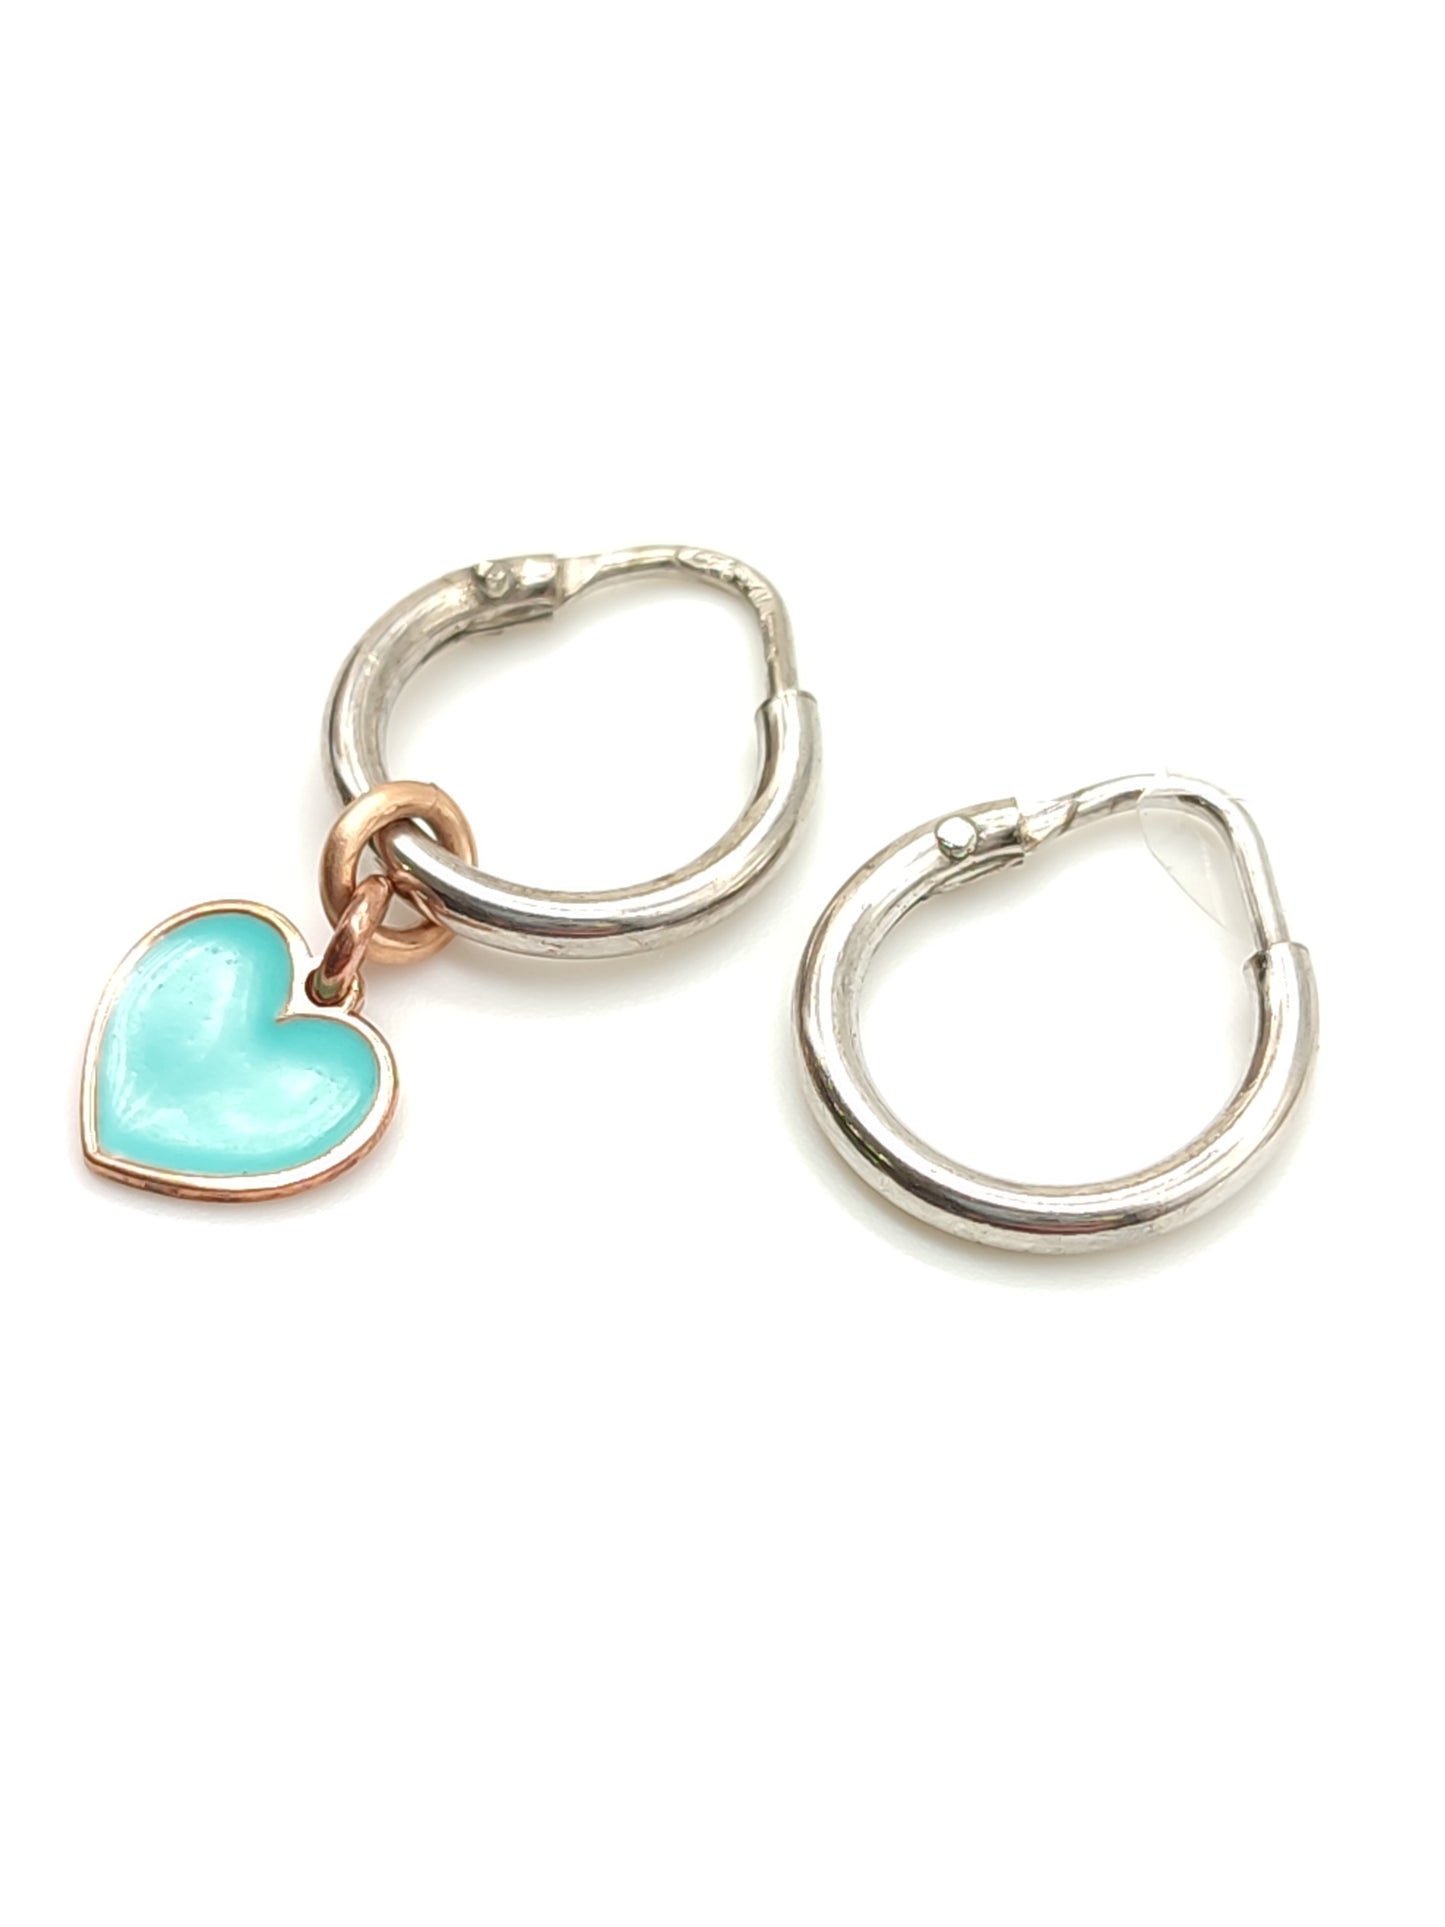 Silver earrings with blue enamel heart pendant